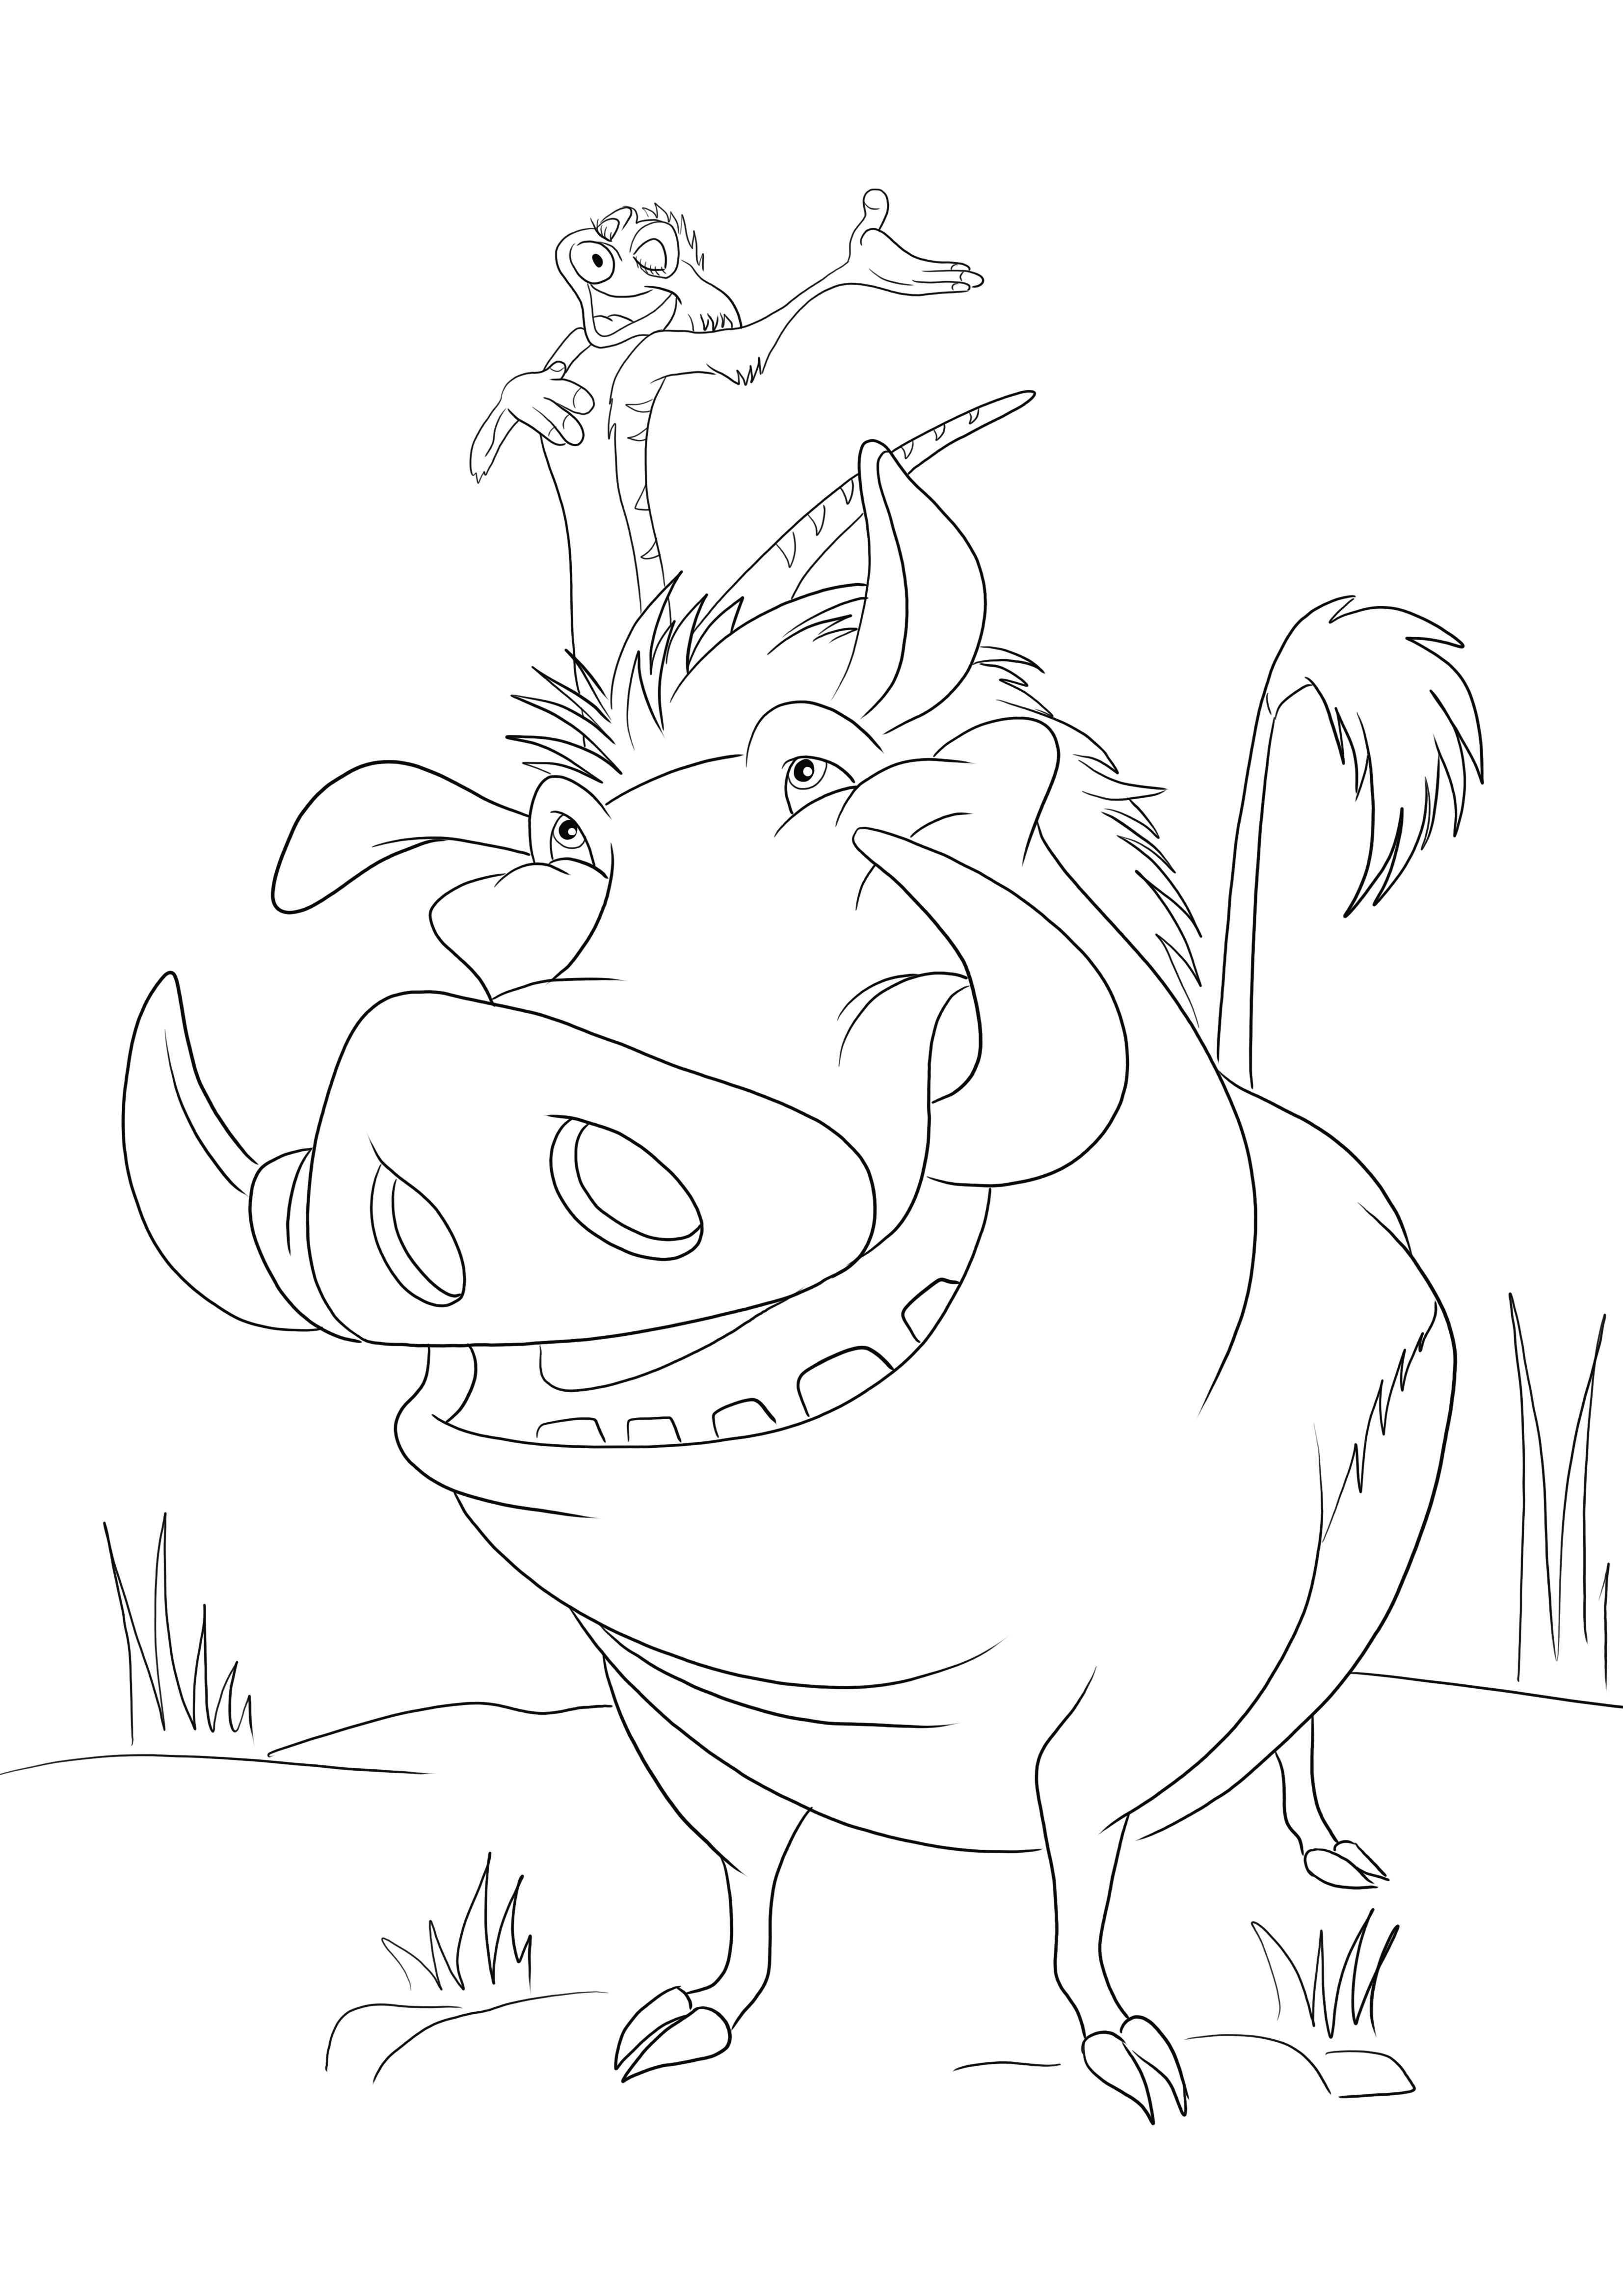 Timon und Pumbaa aus dem Cartoon des Königs der Löwen können zum einfachen Ausmalen kostenlos zum Ausdrucken verwendet werden